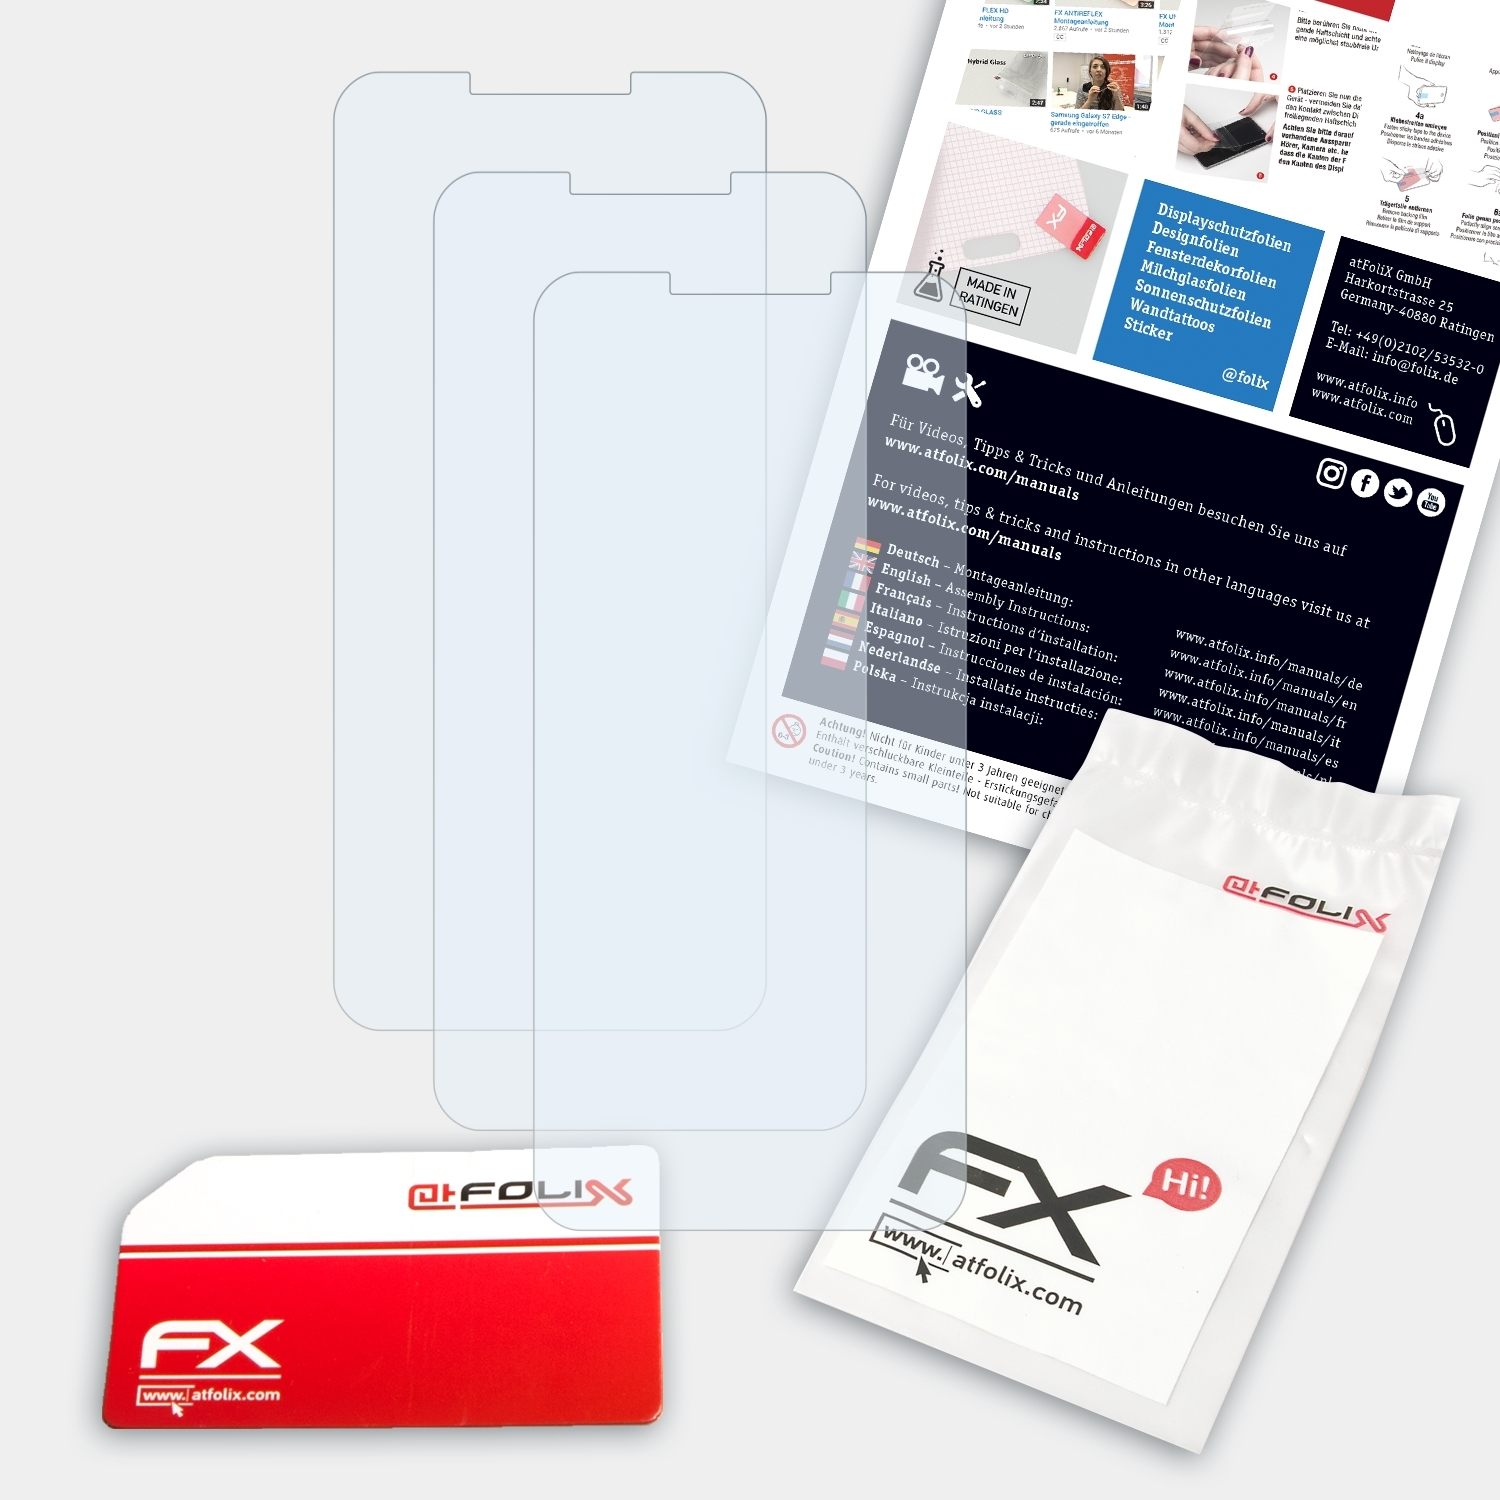 ATFOLIX Doogee BL5500 Lite) FX-Clear 3x Displayschutz(für